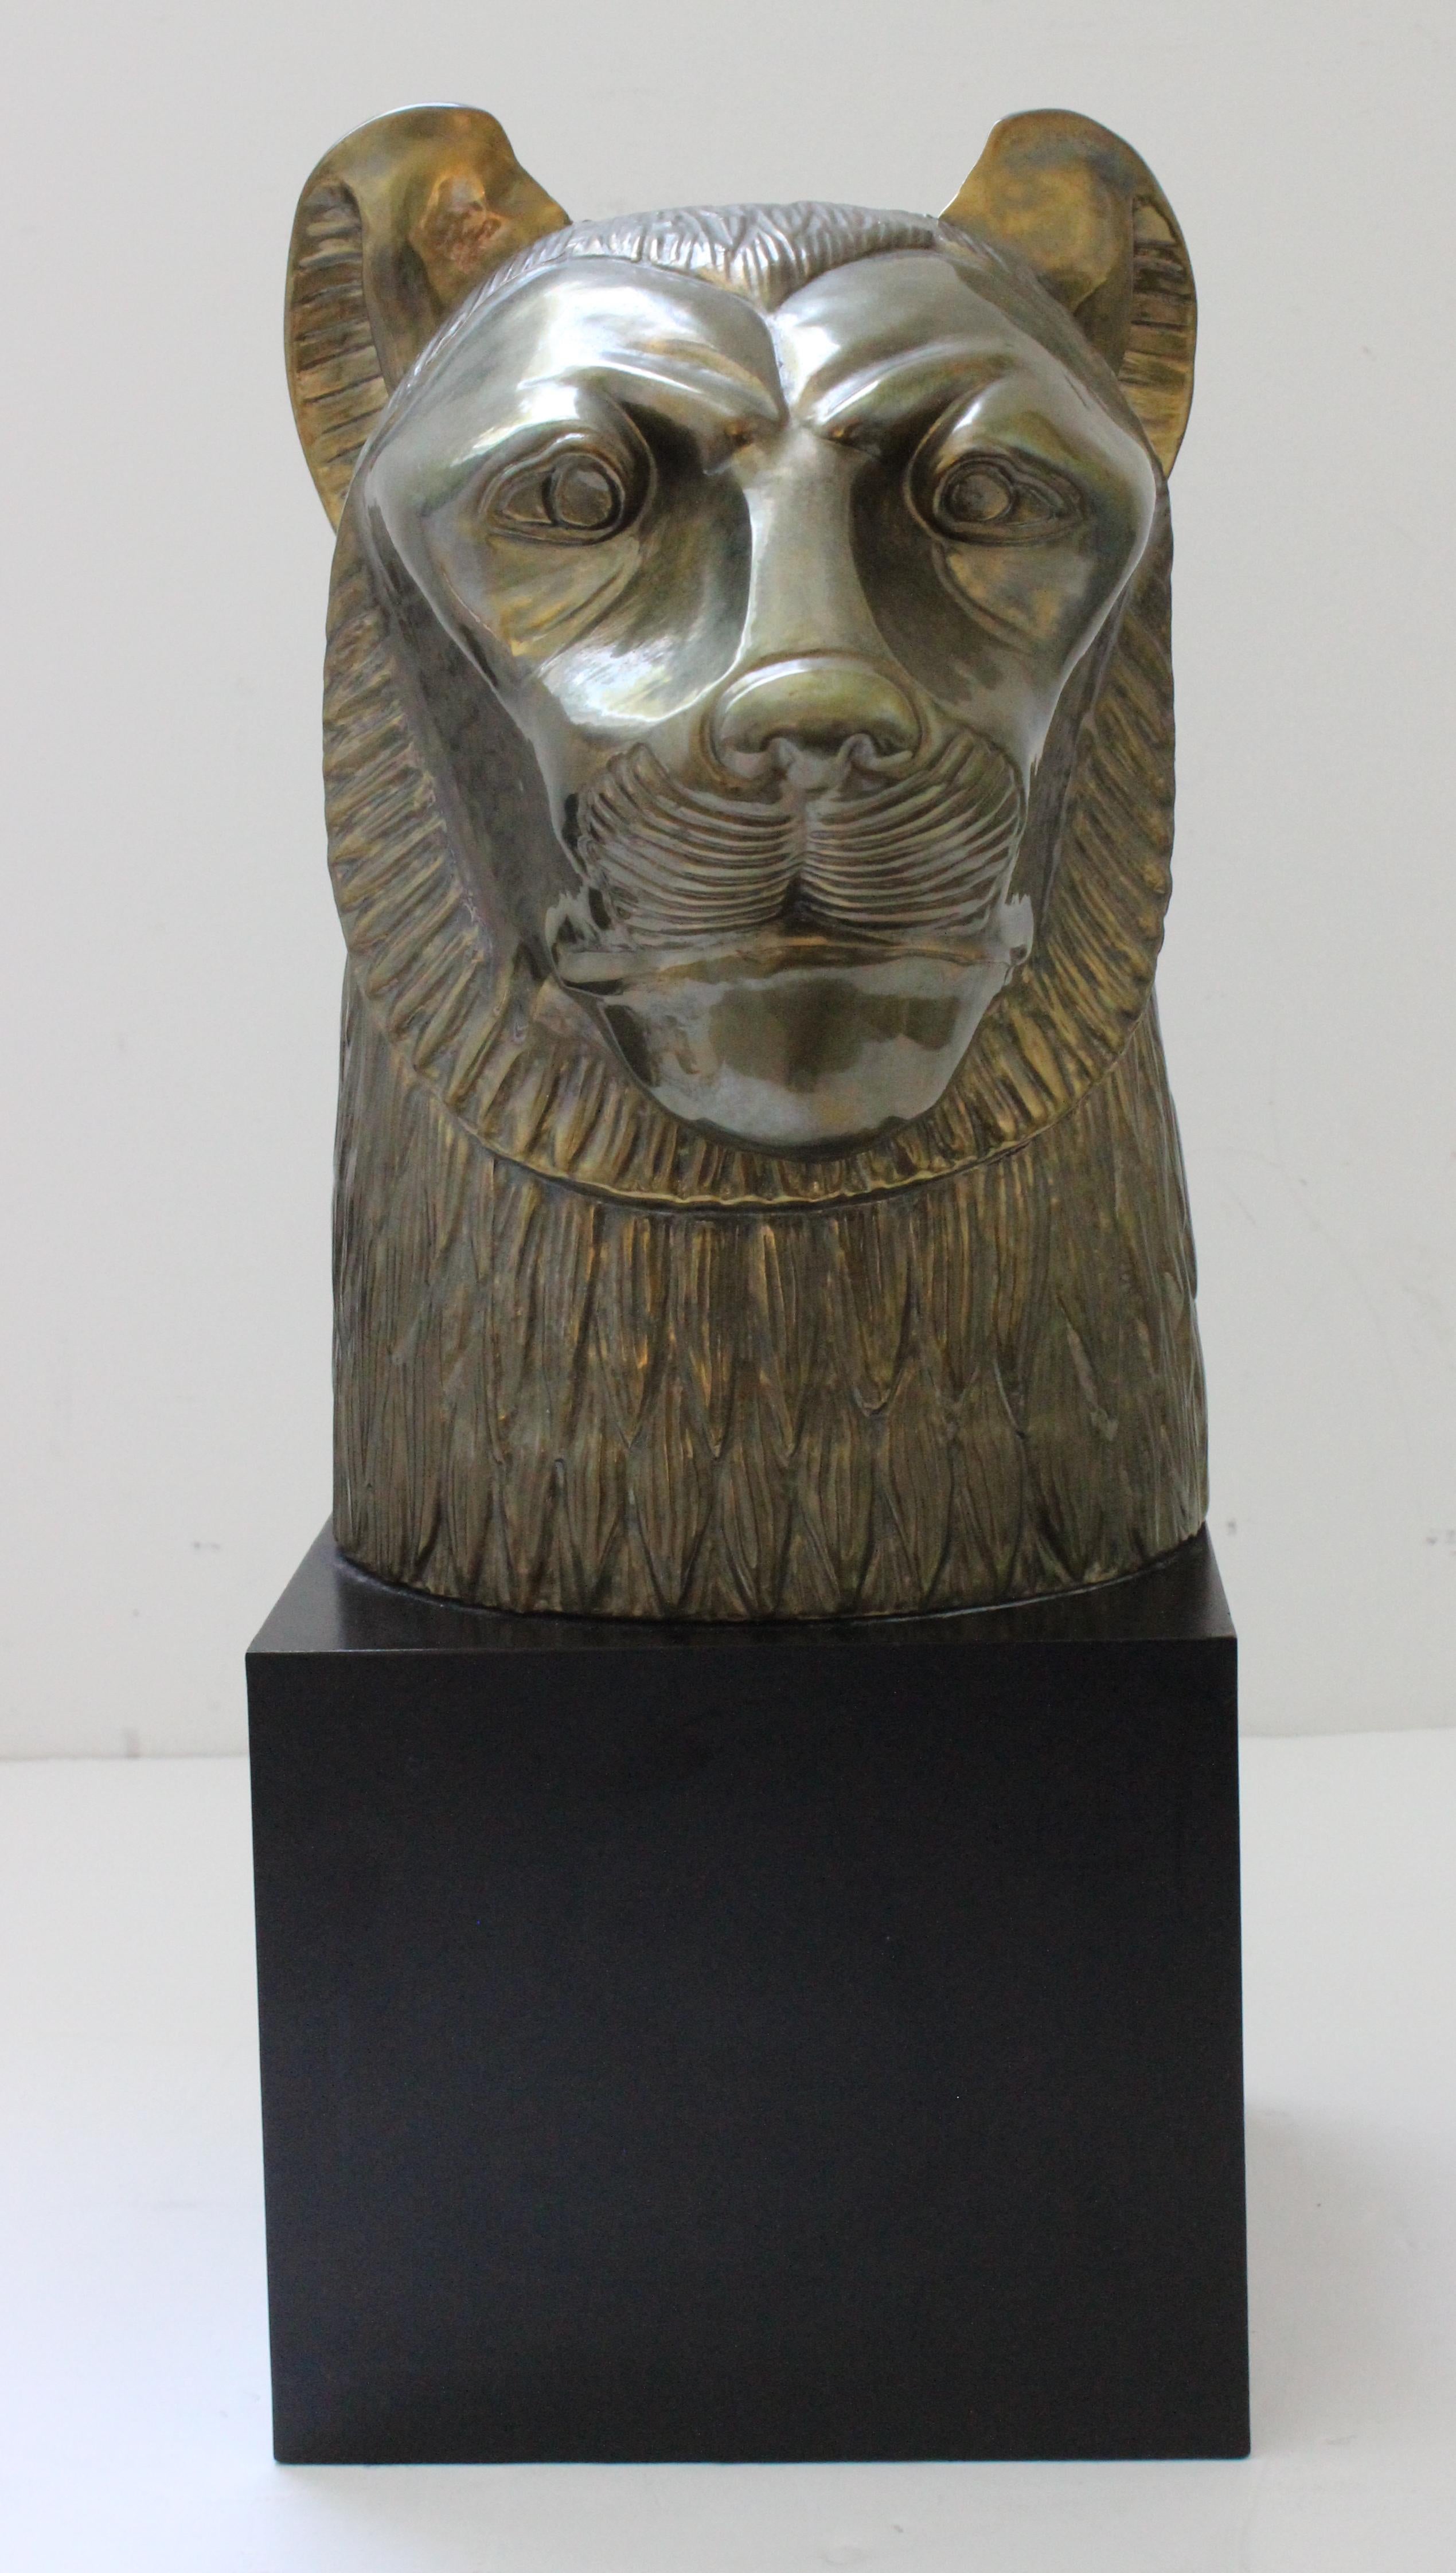 Cette figure élégante et chic de la déesse égyptienne Sekhmet date de la fin des années 1970 et a été créée par Chapman dans le cadre d'une collection commémorant l'exposition mondiale de Toutankhamon. 

Note : La pièce est fabriquée en finition